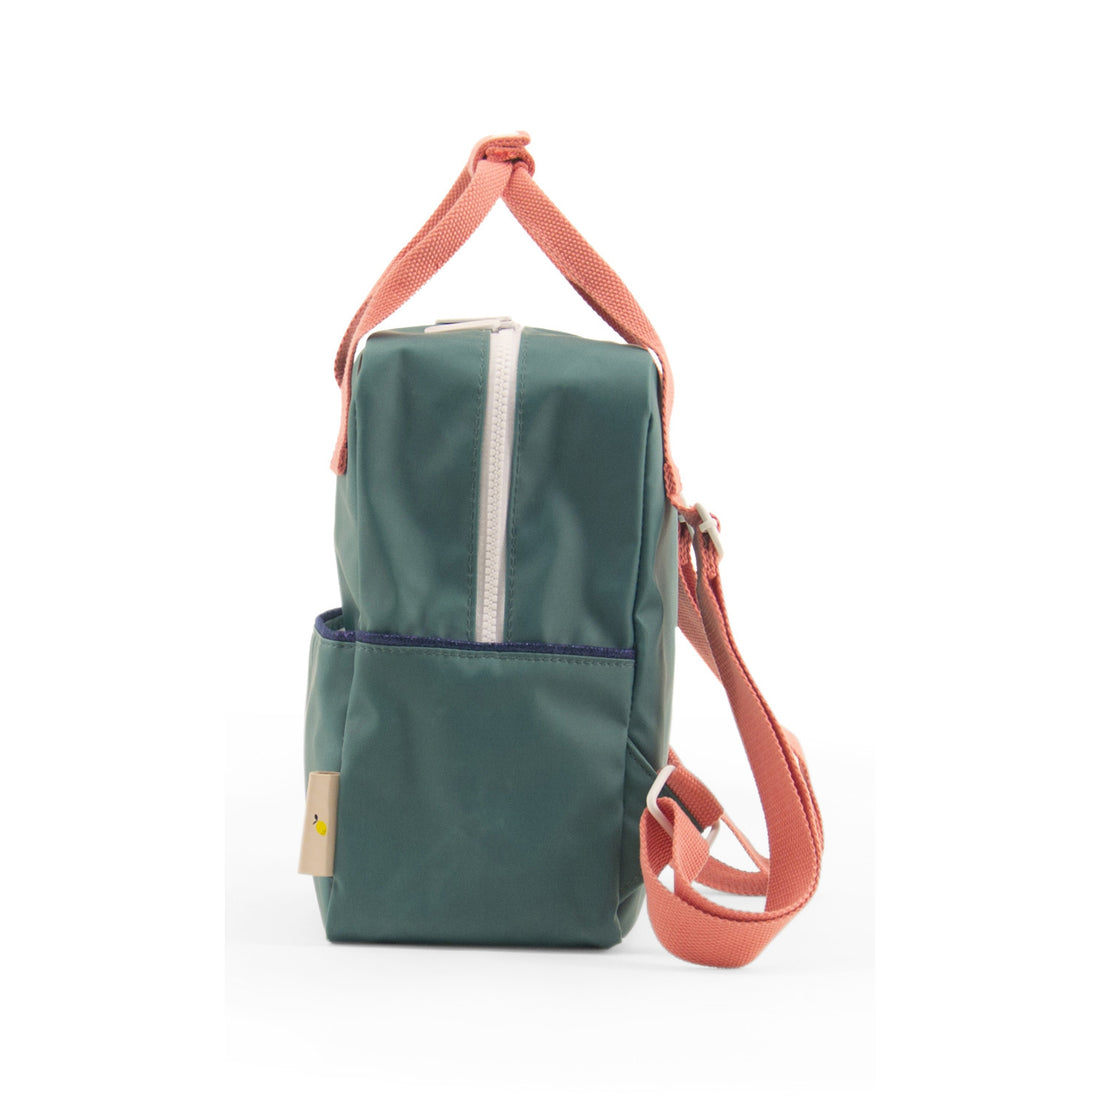 sticky-lemon-backpack-grass-green-s- (2)